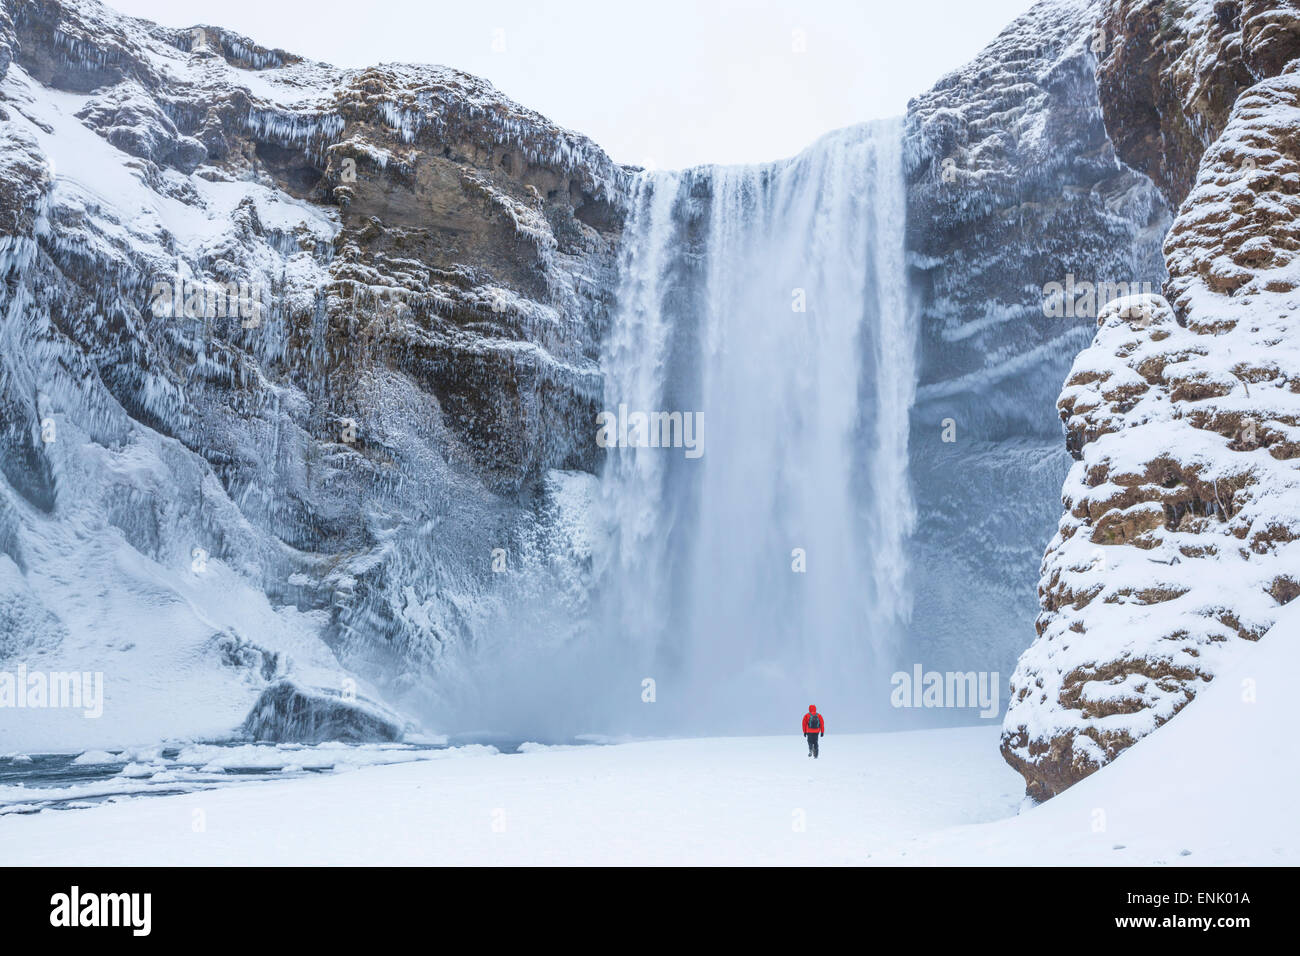 Une personne en veste rouge marche dans la neige en direction de Skogafoss chute d'eau gelée, Skogar, Sud de l'Islande, Islande Banque D'Images